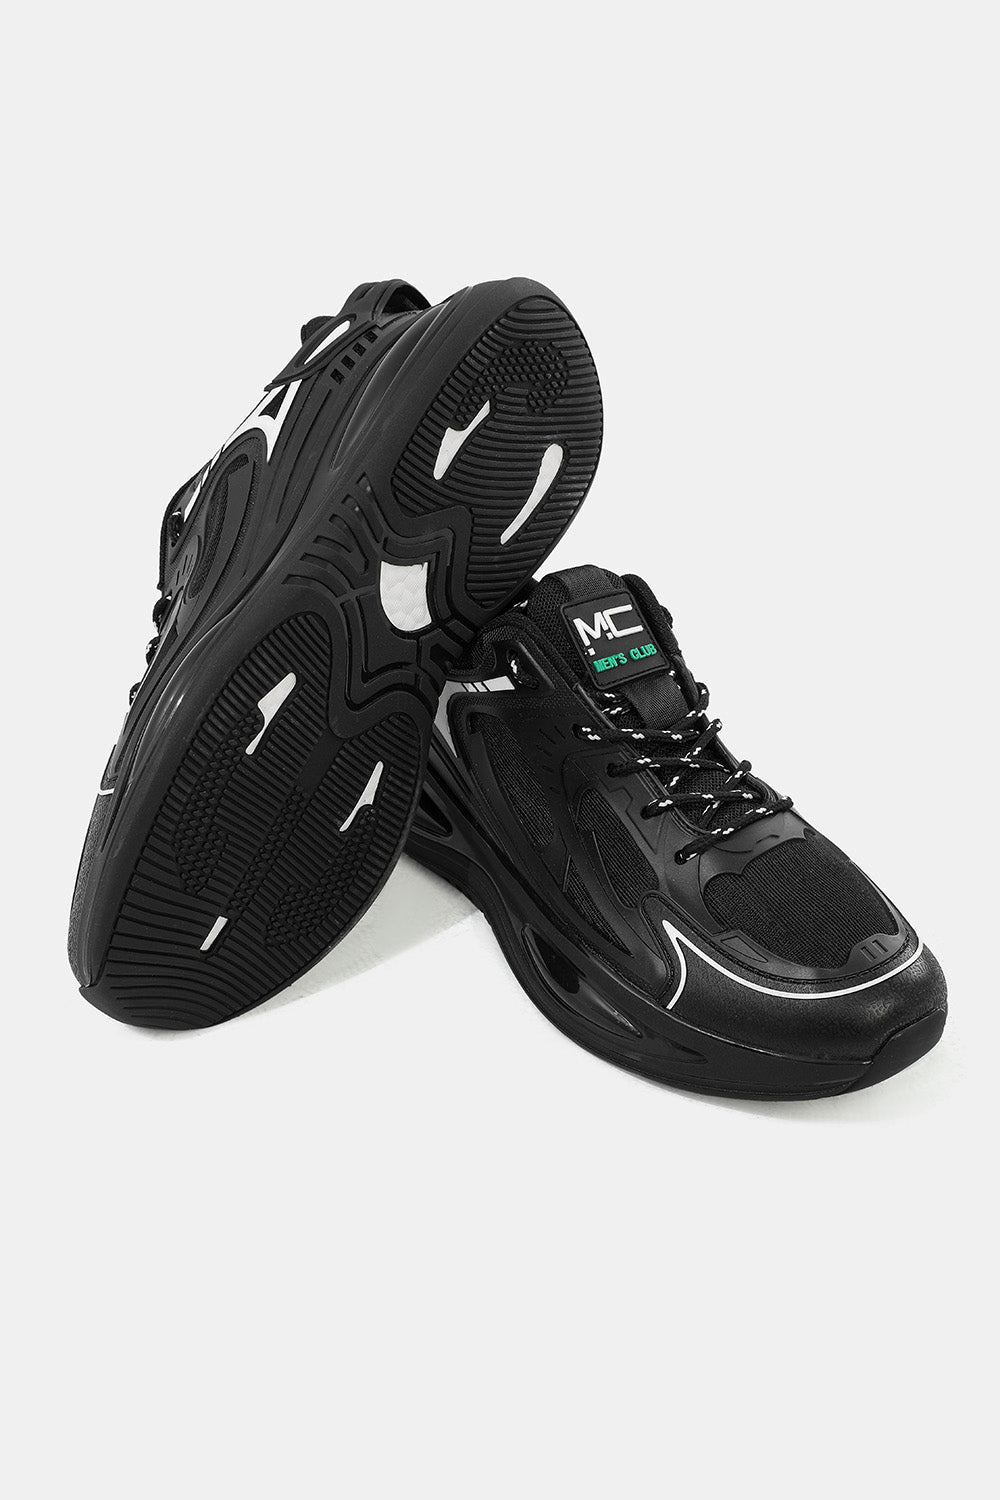 black running shoes Men's Club